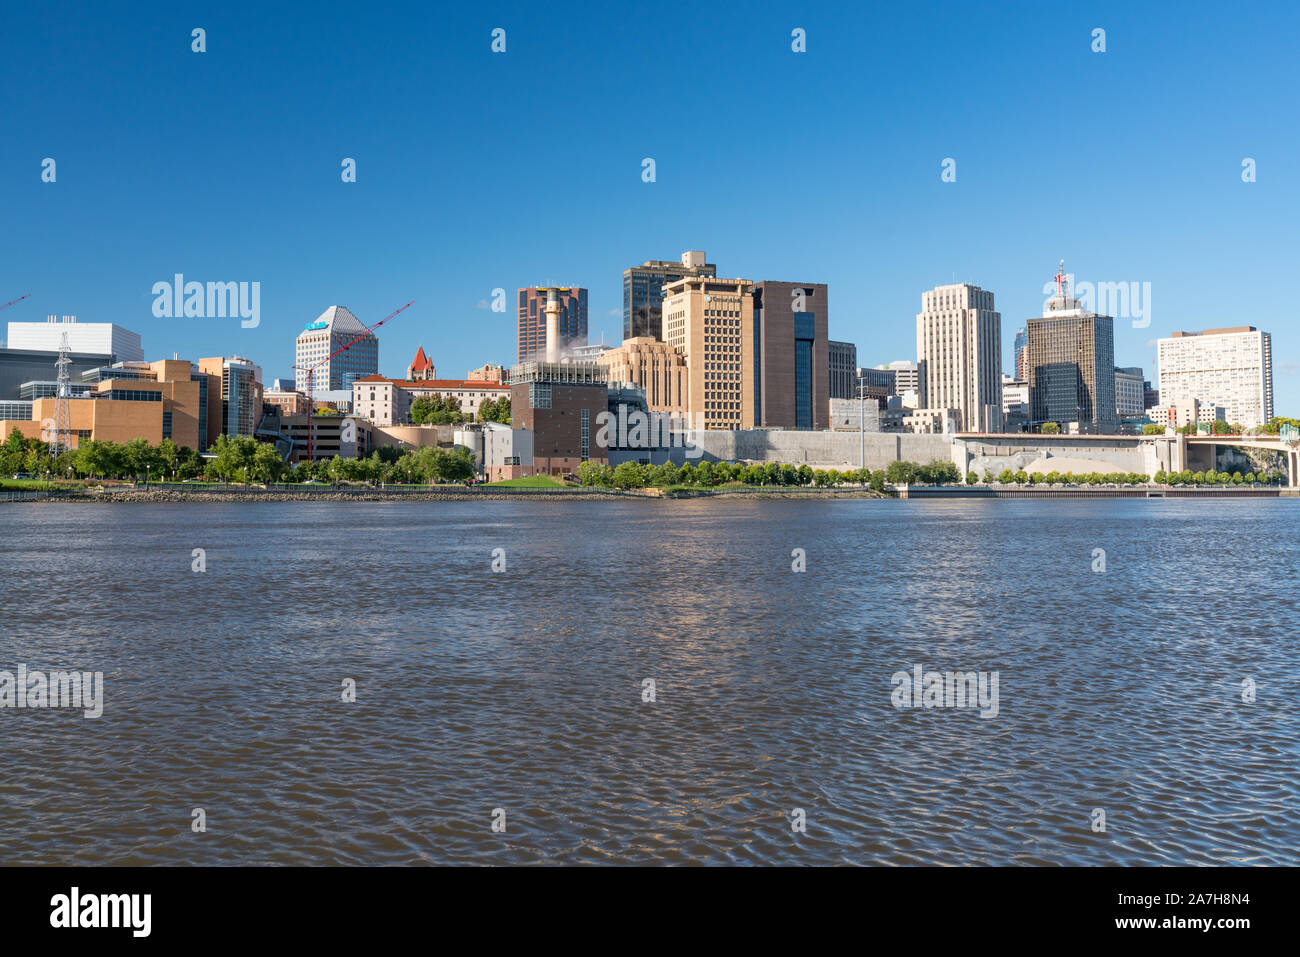 Saint Paul, MN - September 23, 2019: St. Paul, Minnesota Skyline along the Mississippi River Stock Photo